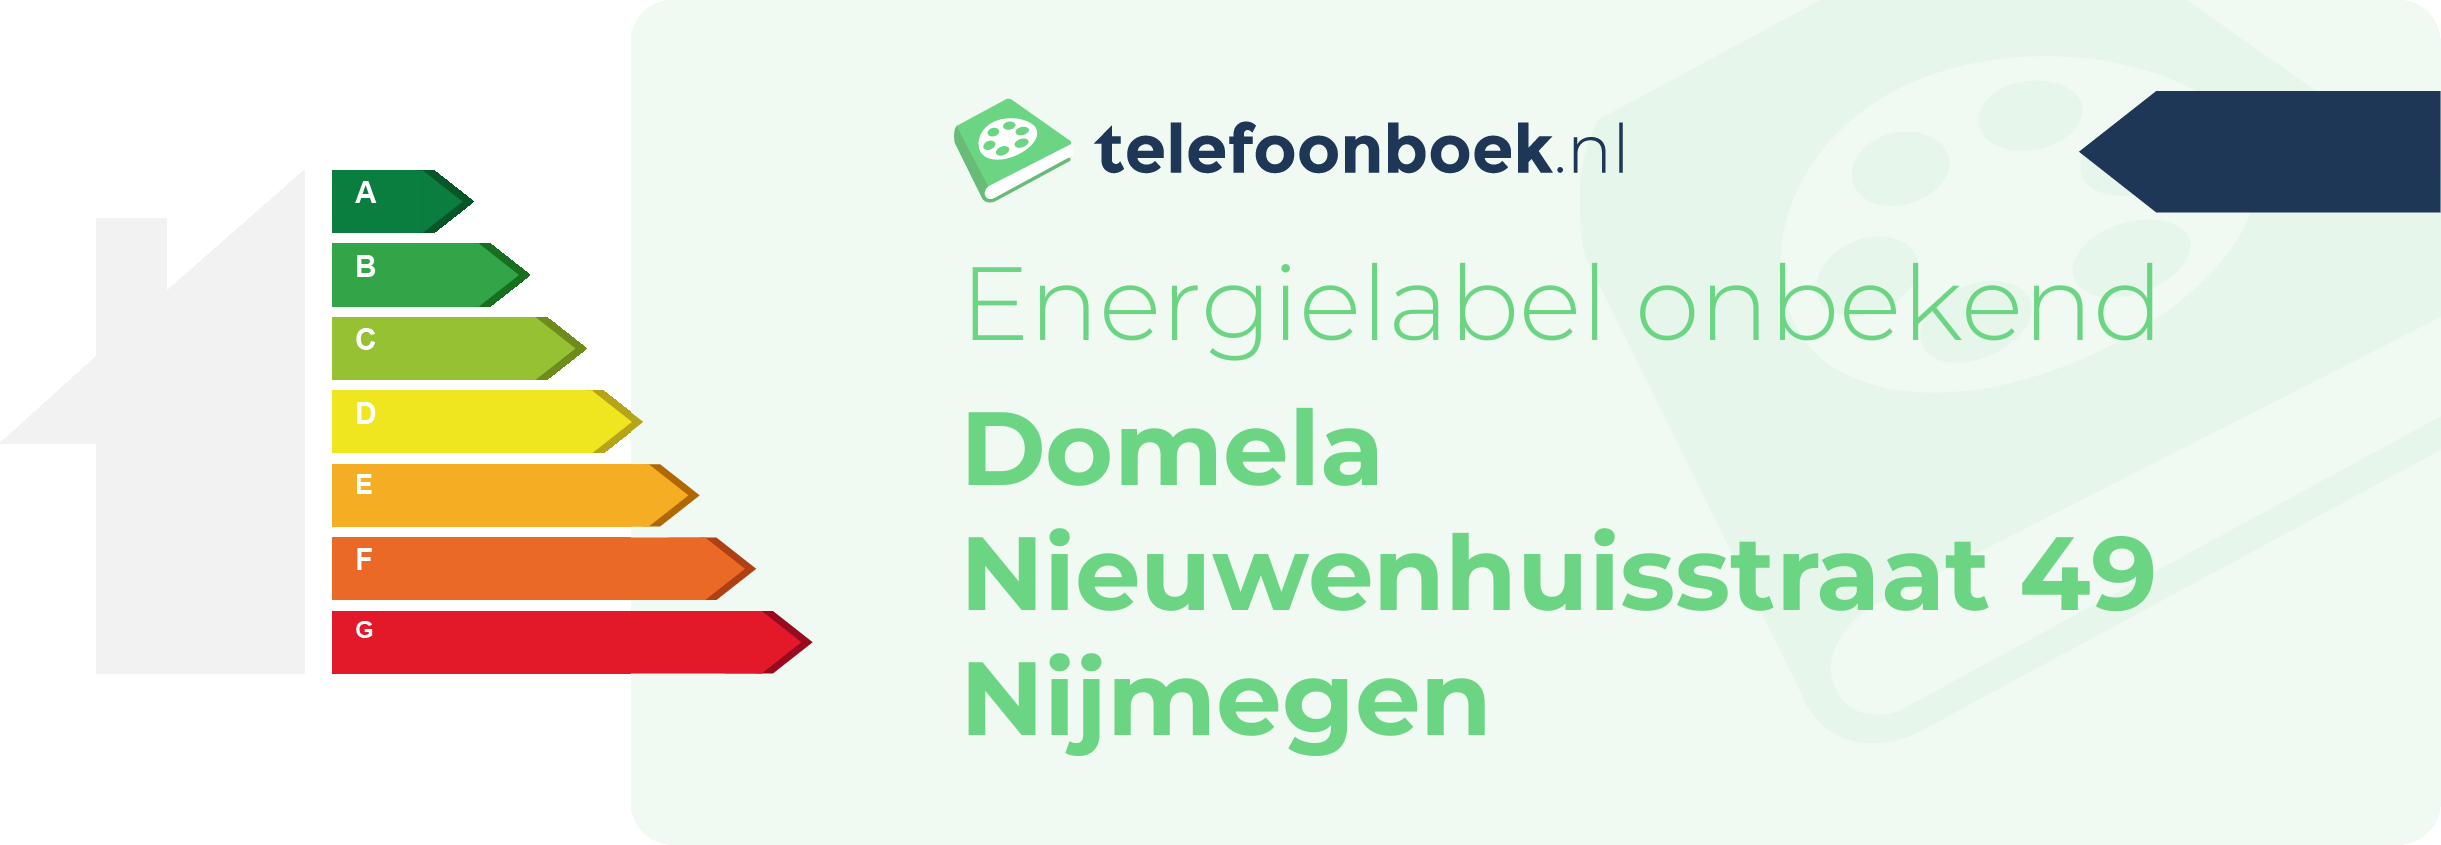 Energielabel Domela Nieuwenhuisstraat 49 Nijmegen